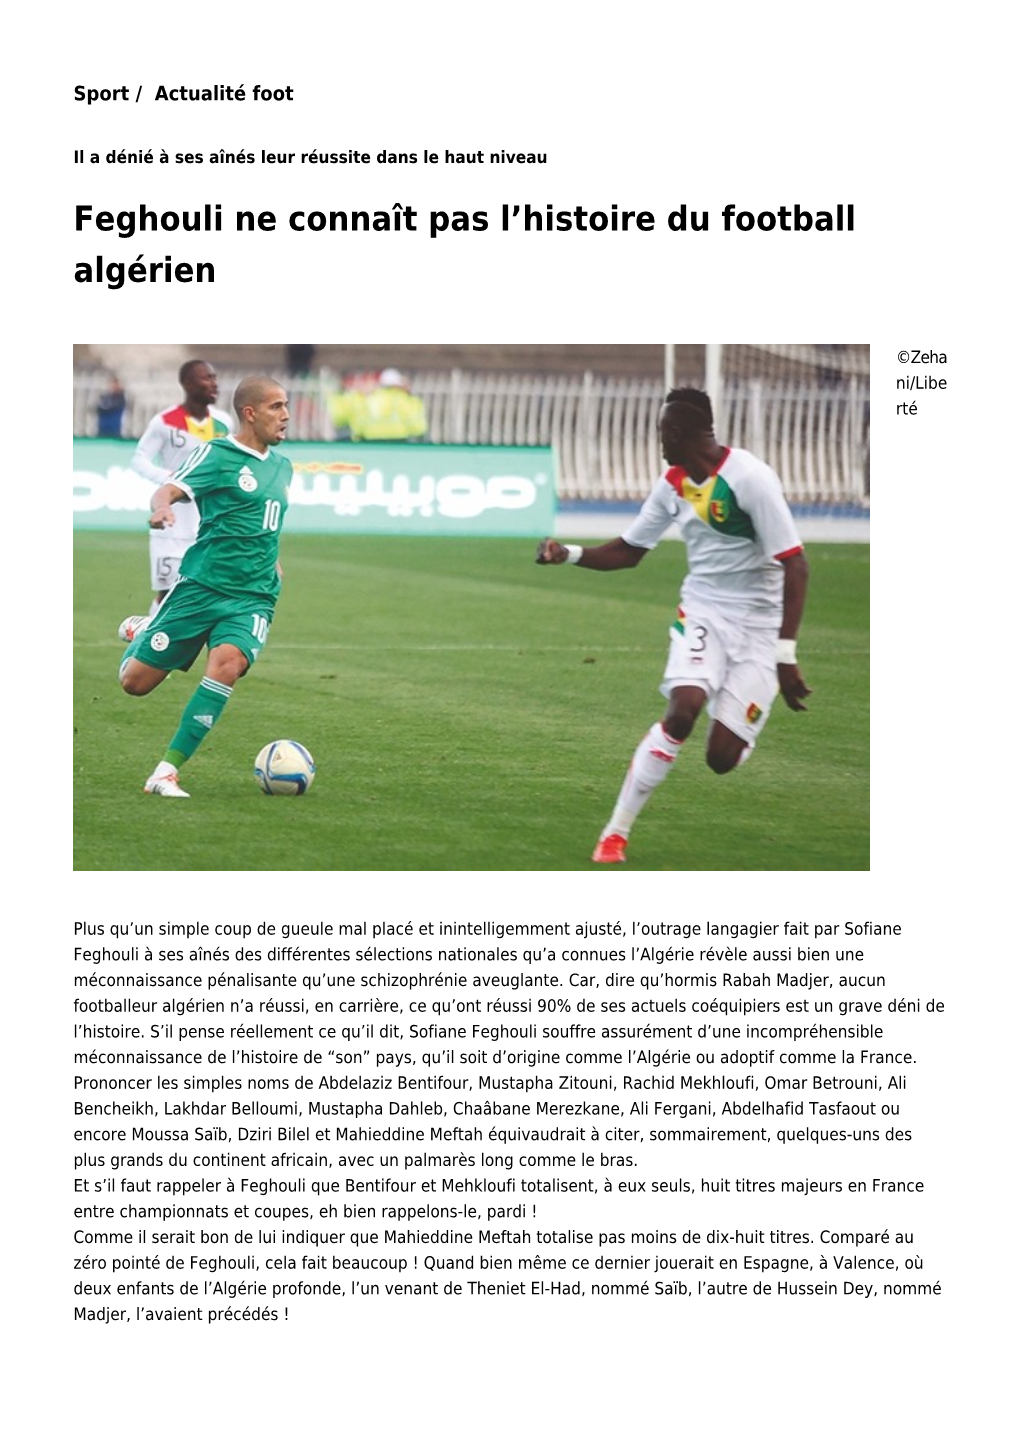 Feghouli Ne Connaît Pas L'histoire Du Football Algérien